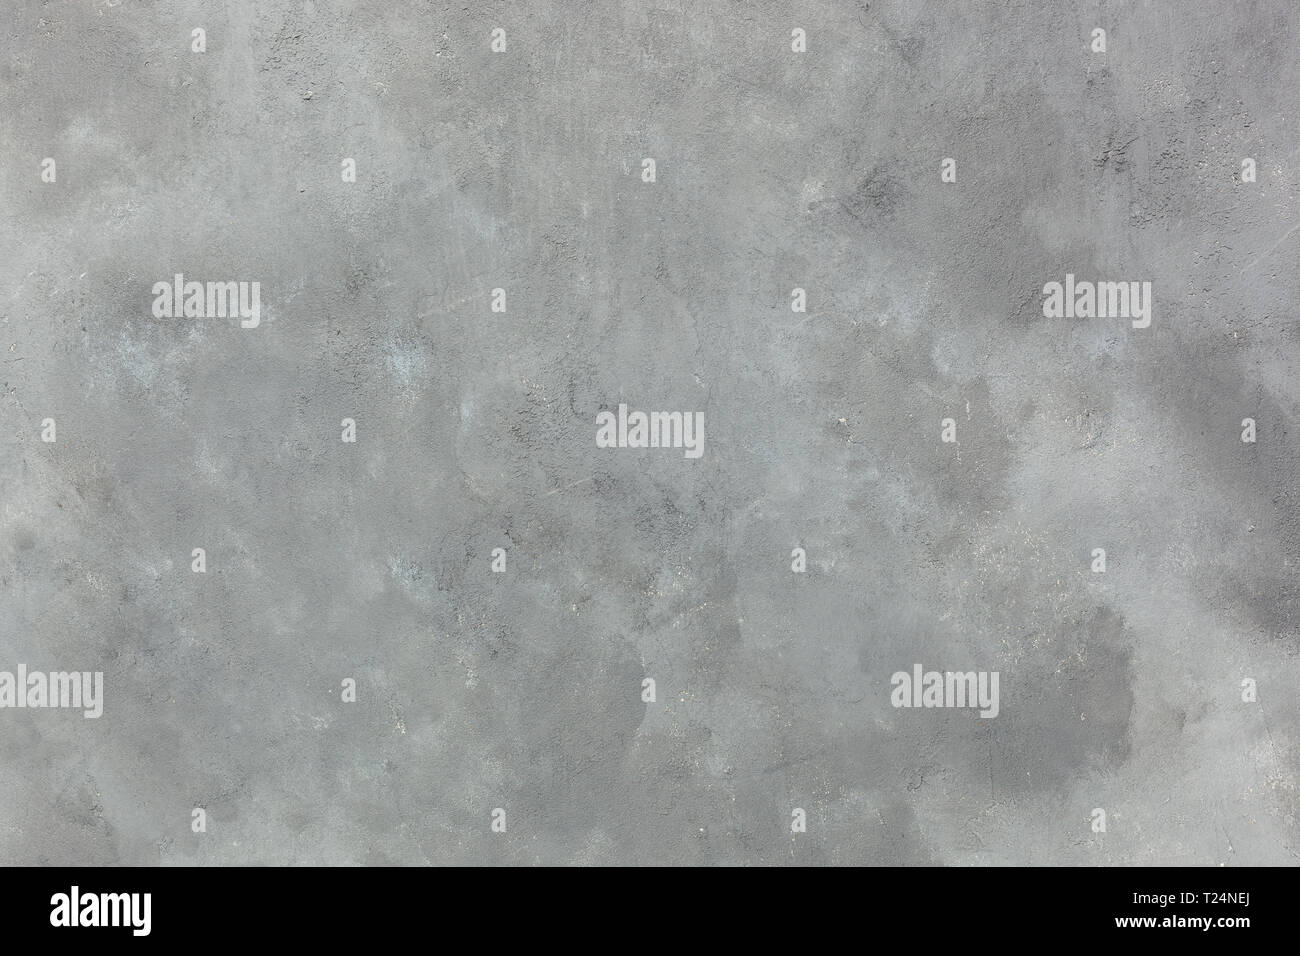 Szare tło - szary beton, miejsce na tekst, tło artykułu, abstrakcja, strukturalne podłoże, zimne szare kolory Foto Stock